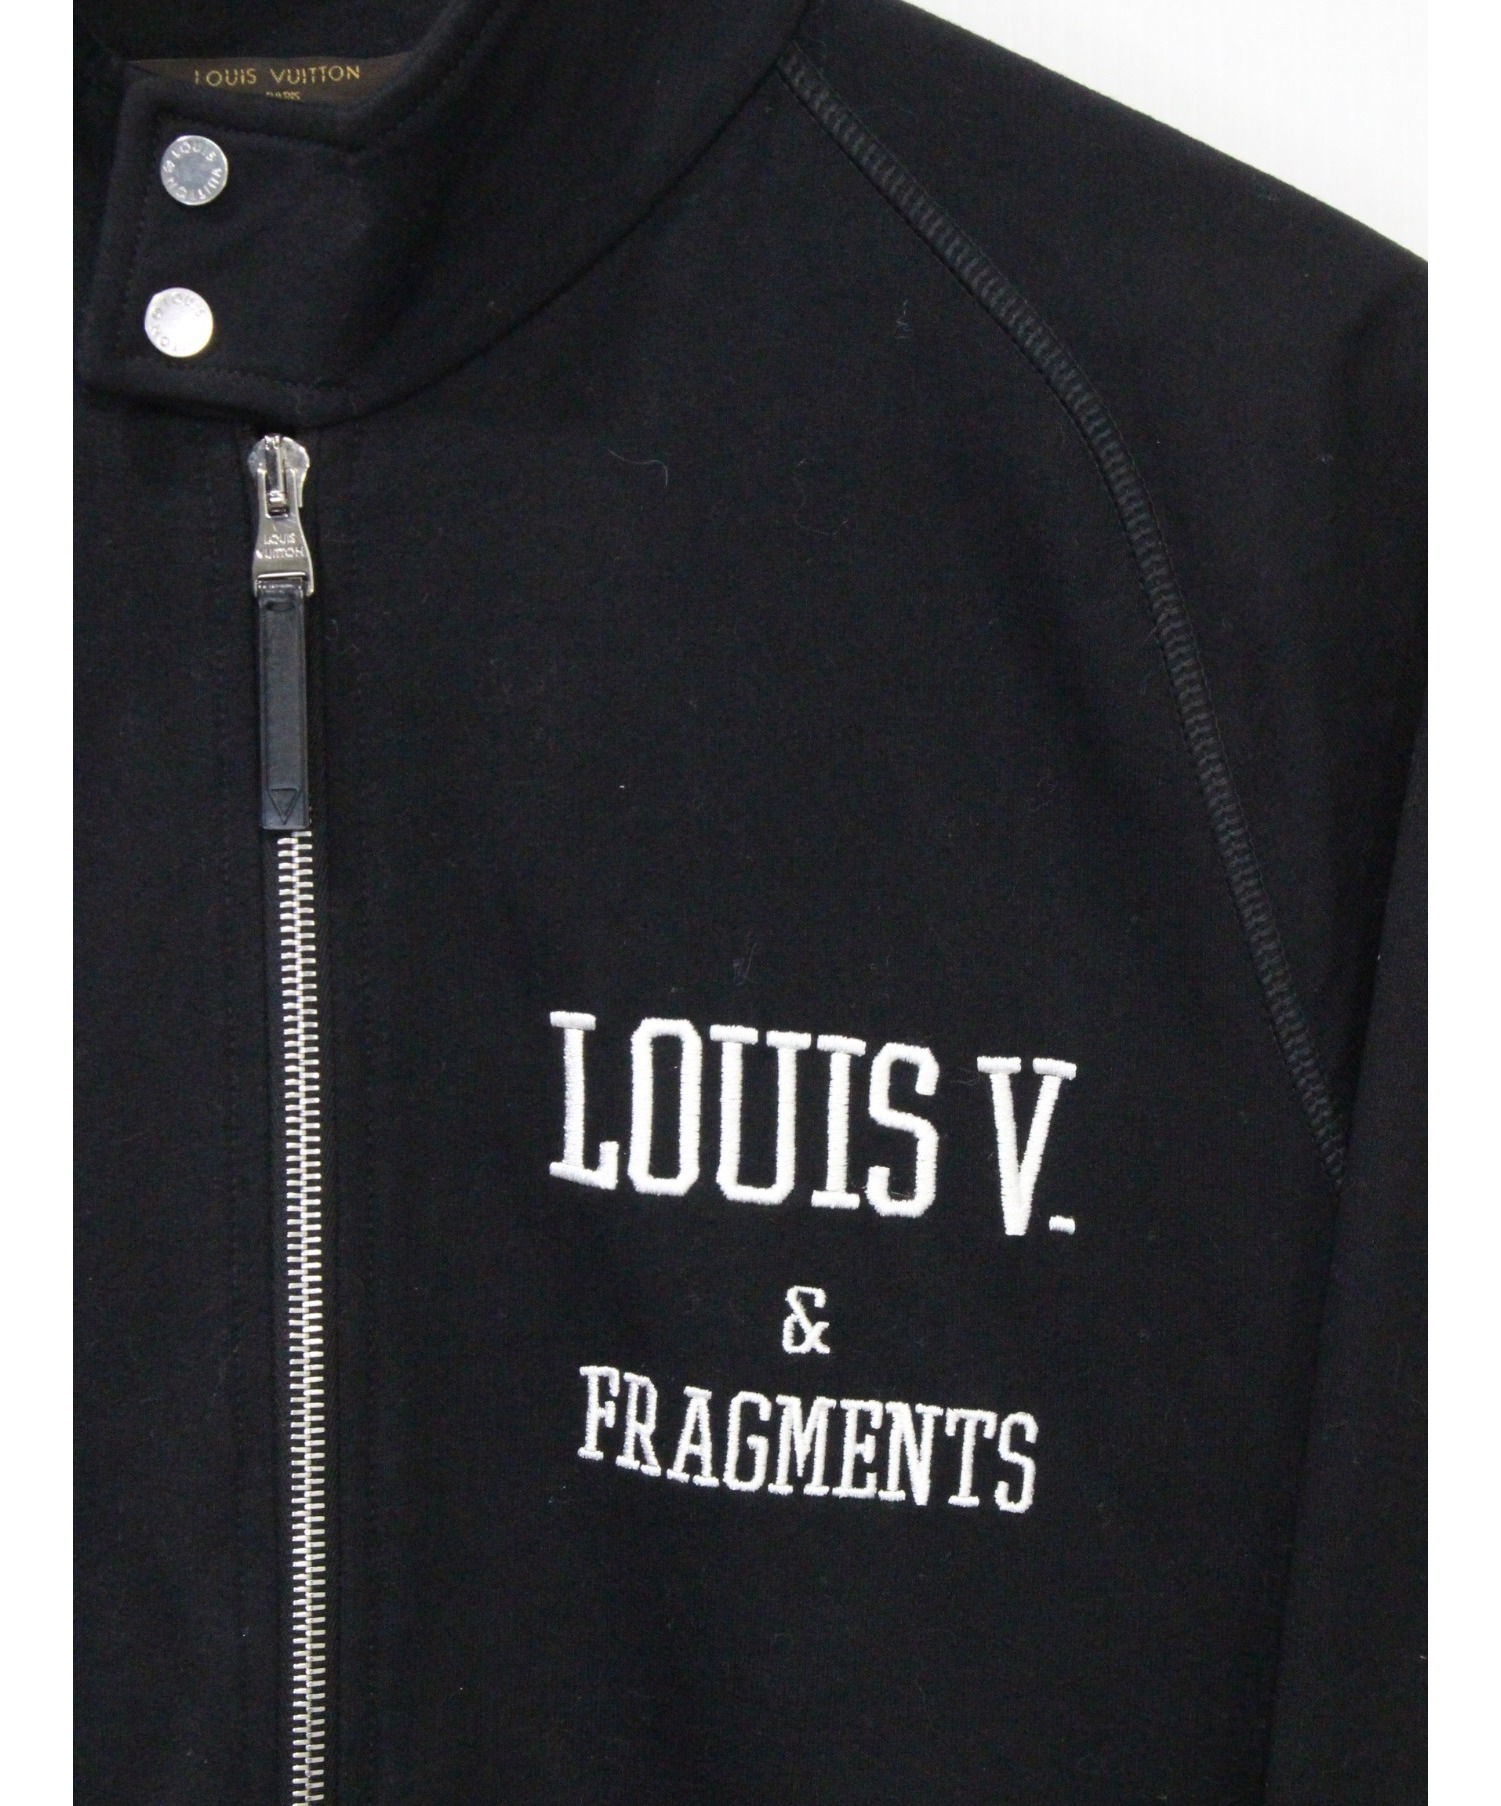 LOUIS VUITTON (ルイ ヴィトン) Fragment design スウェットジャケット ブラック サイズ:S